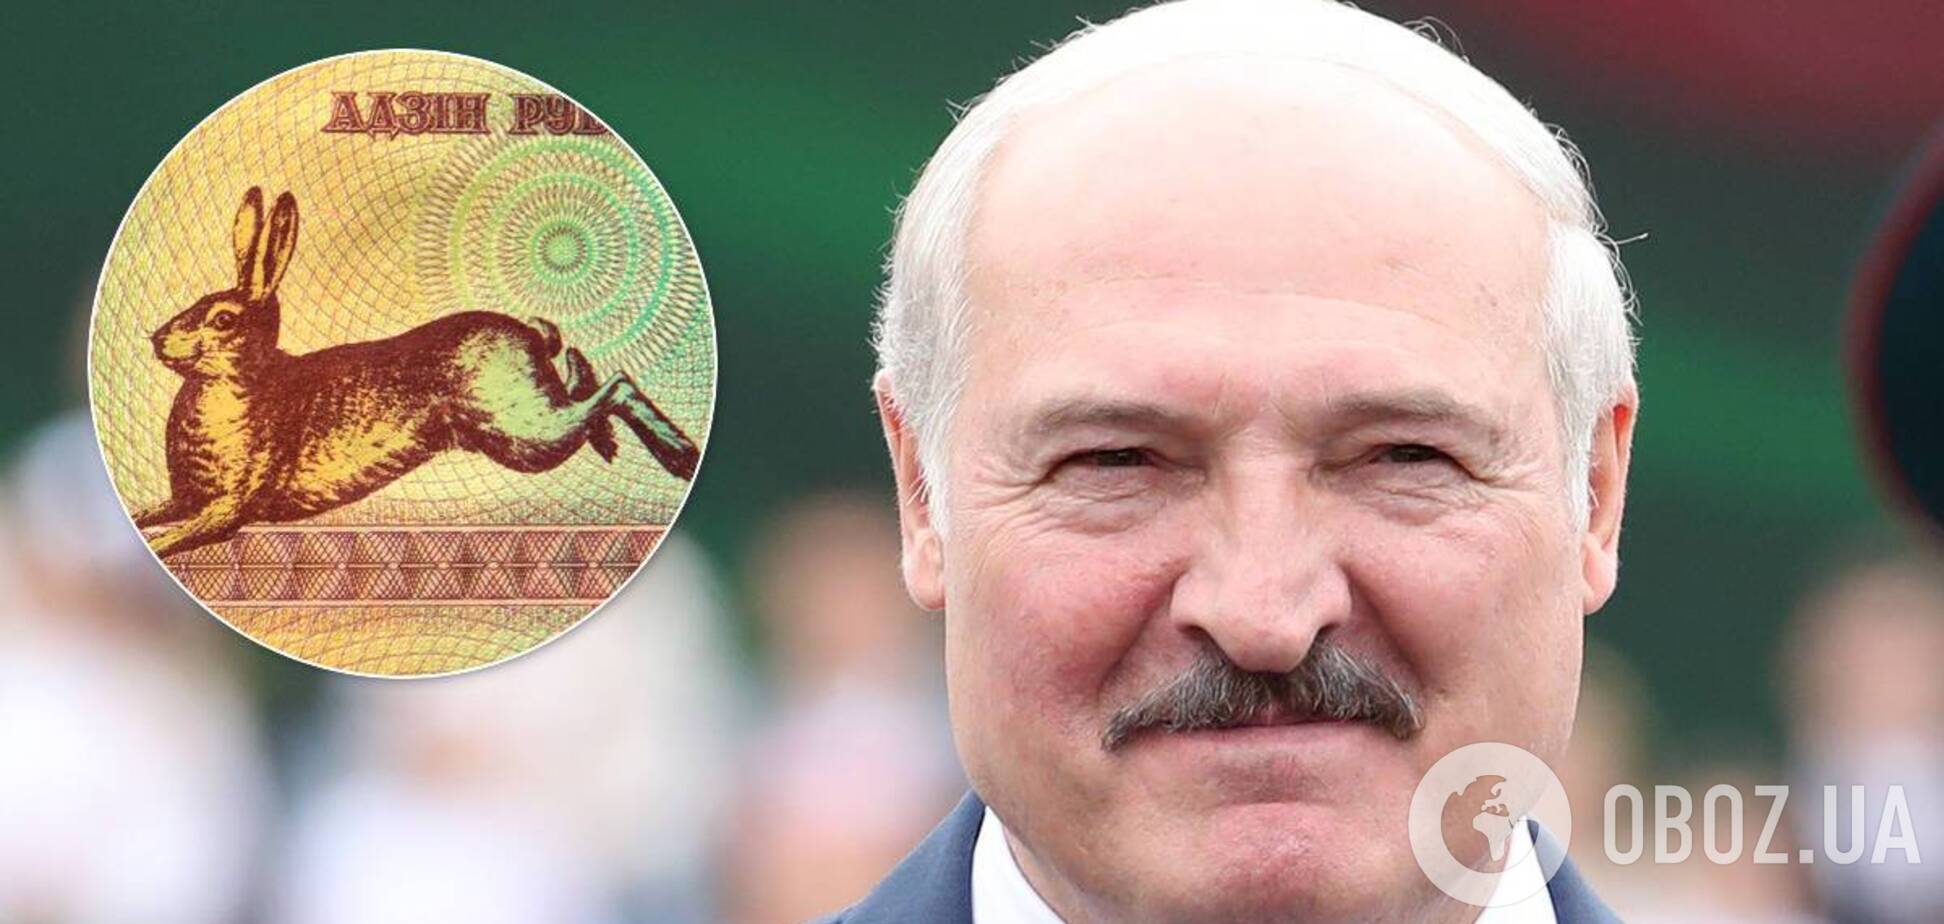 ЦИК опубликовала декларацию Александра Лукашенко